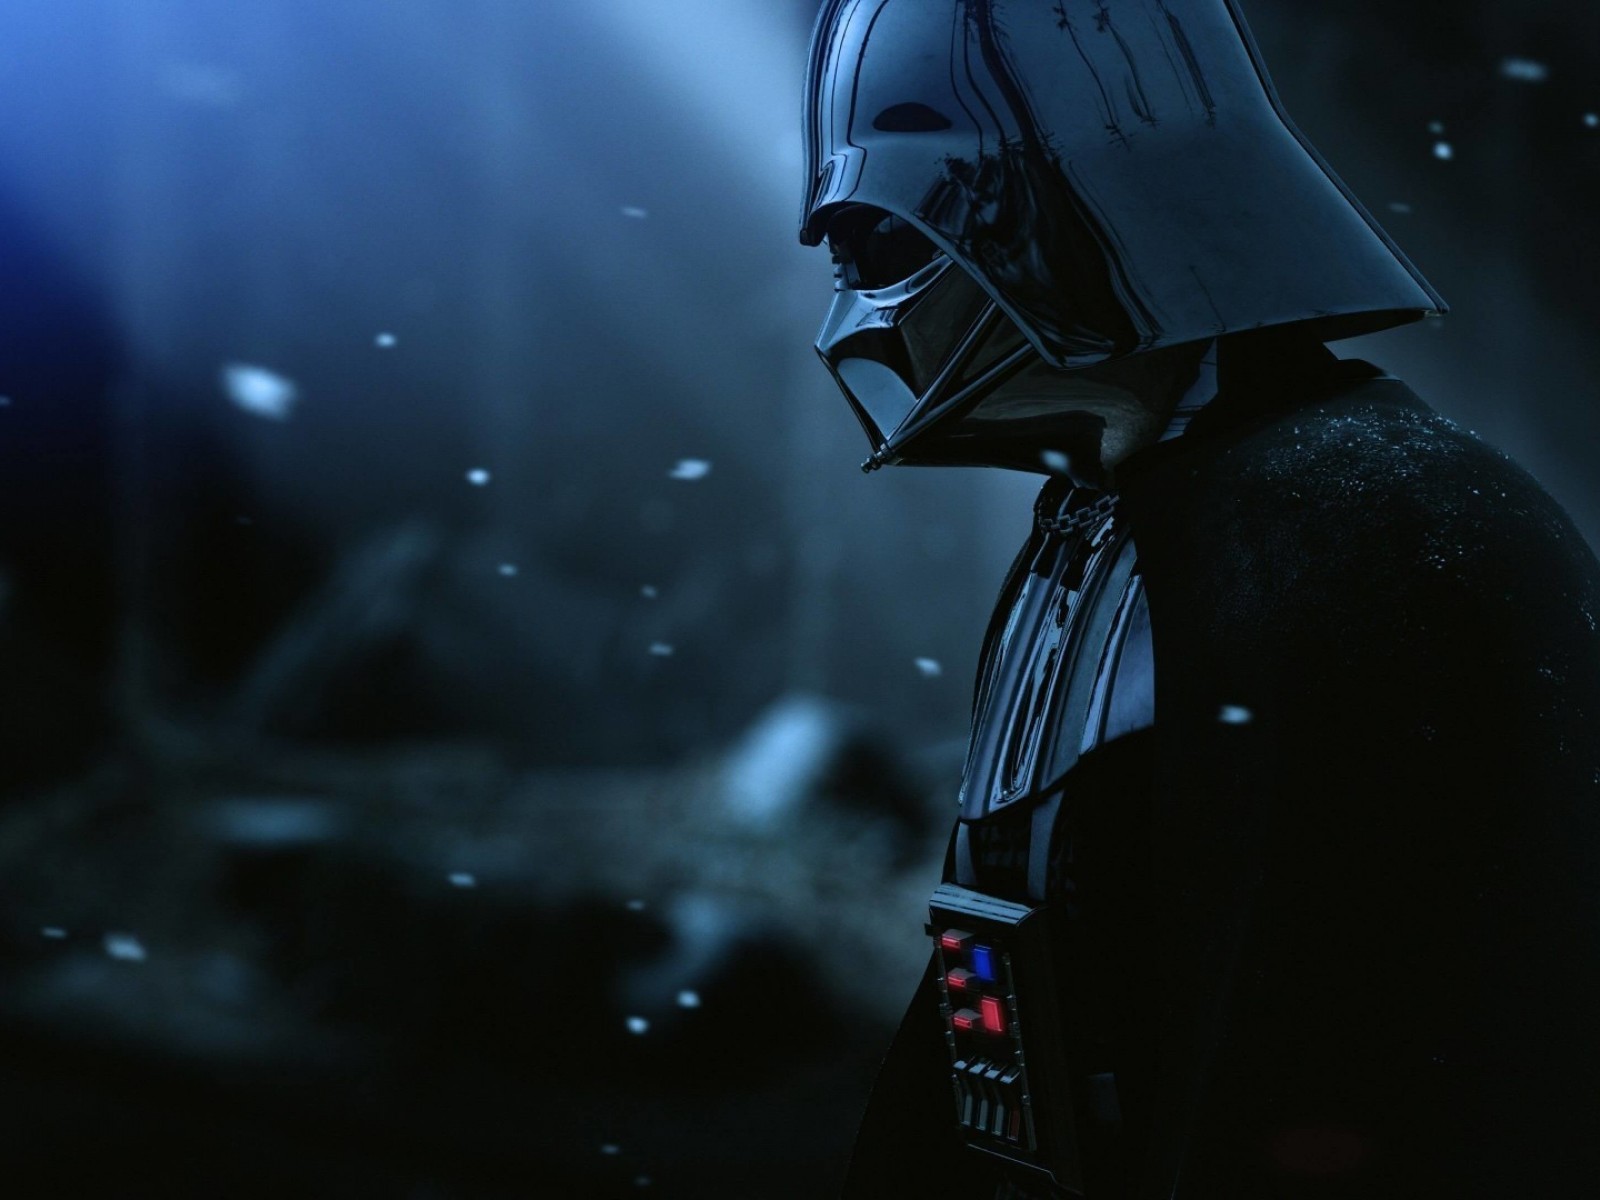 Darth Vader - The Force Unleashed 2 Wallpaper for Desktop 1600x1200